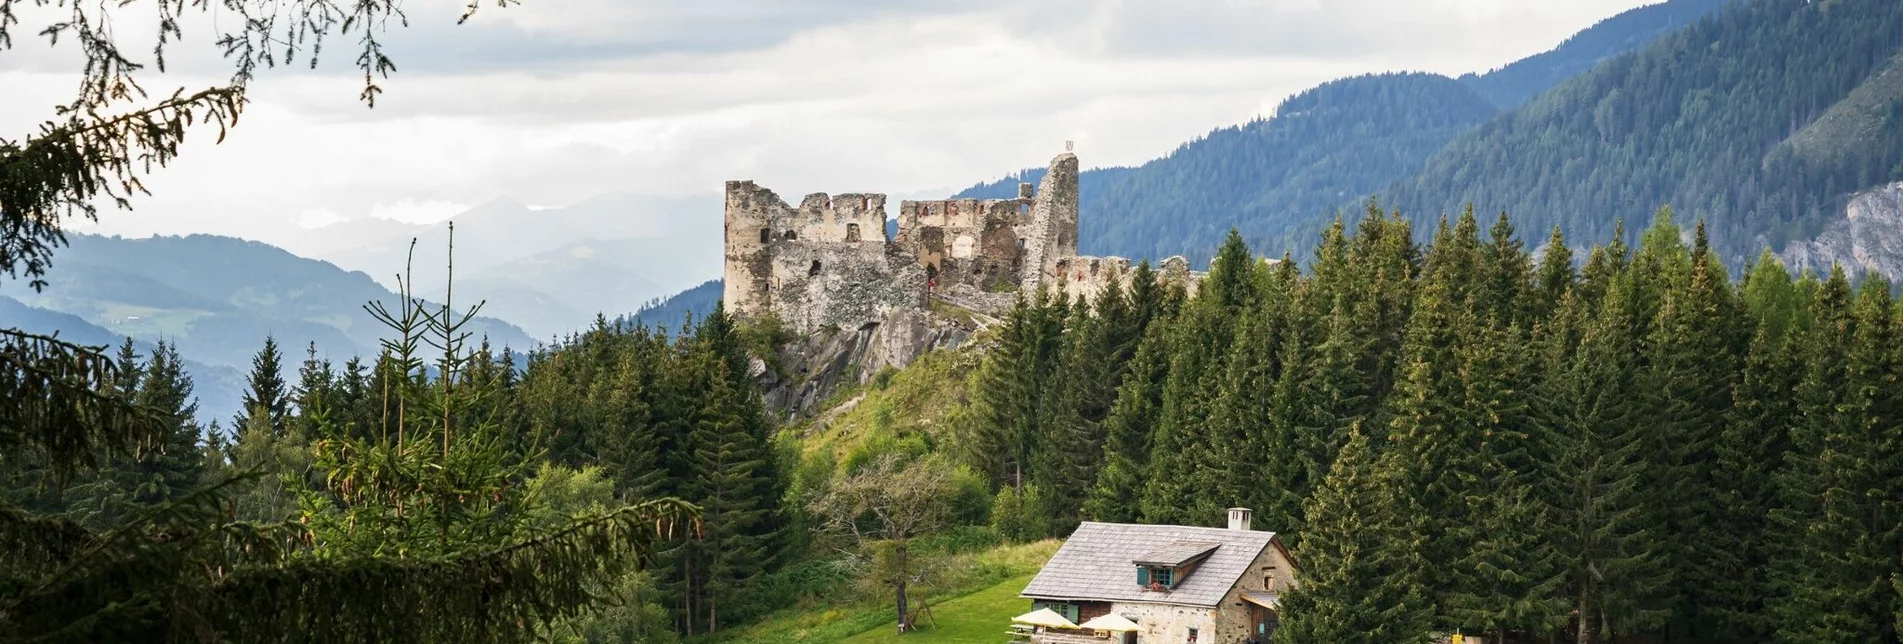 Wanderung Von der "Alten Schmiede" zum Steinschloss - Touren-Impression #1 | © Tourismusverband Region Murau